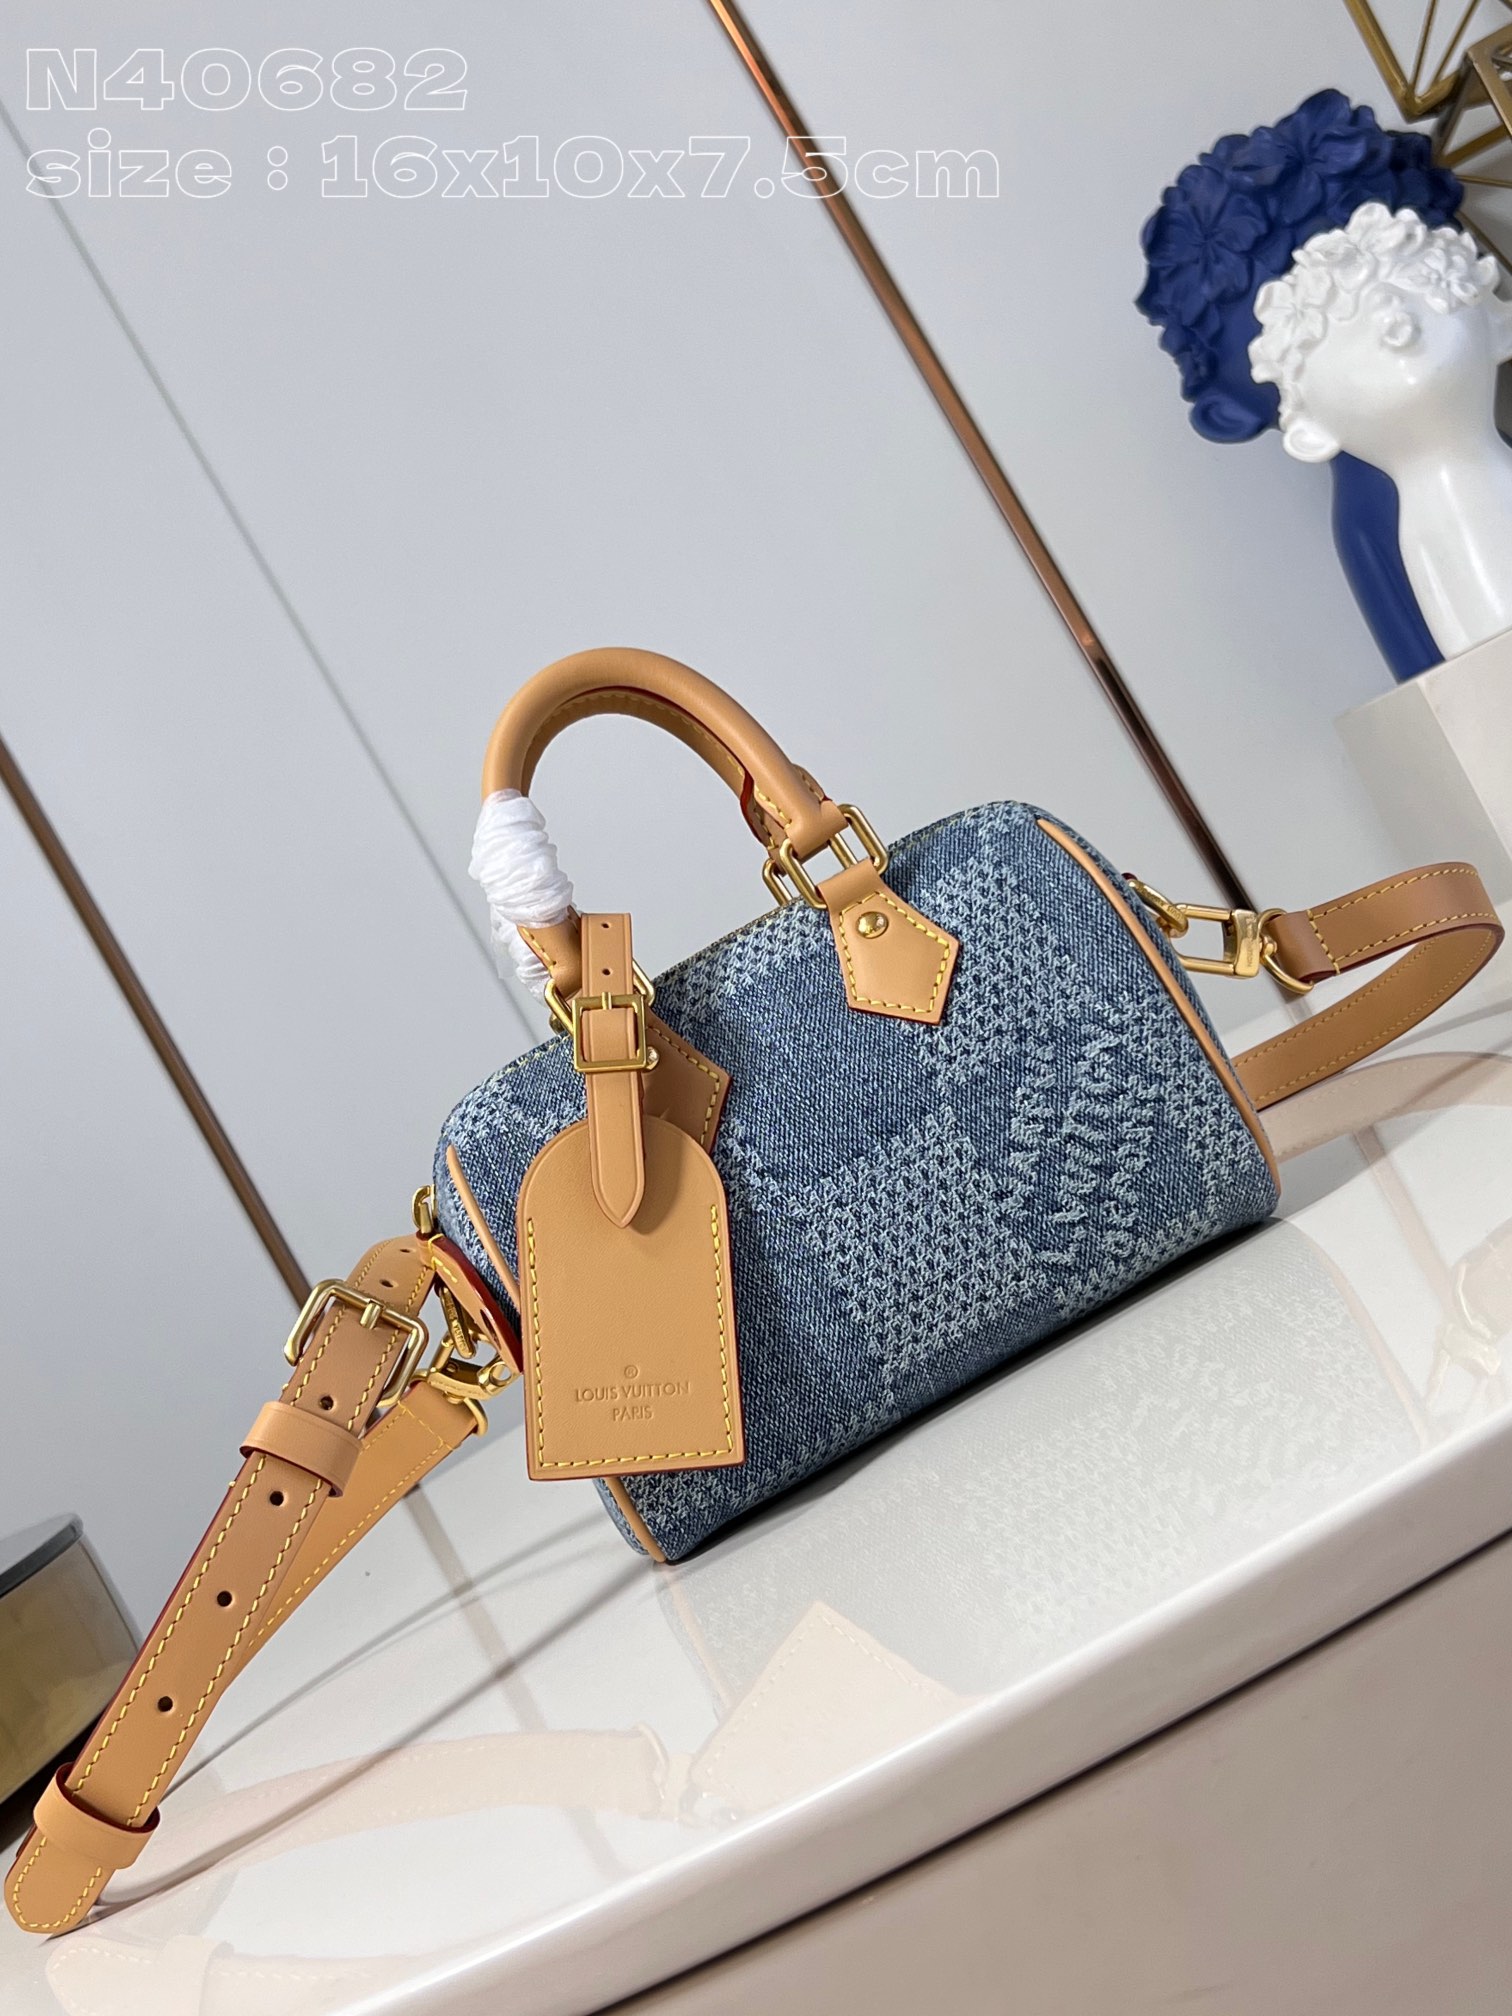 Louis Vuitton LV Speedy Taschen Handtaschen Polieren Leinwand Rindsleder Denim N40682